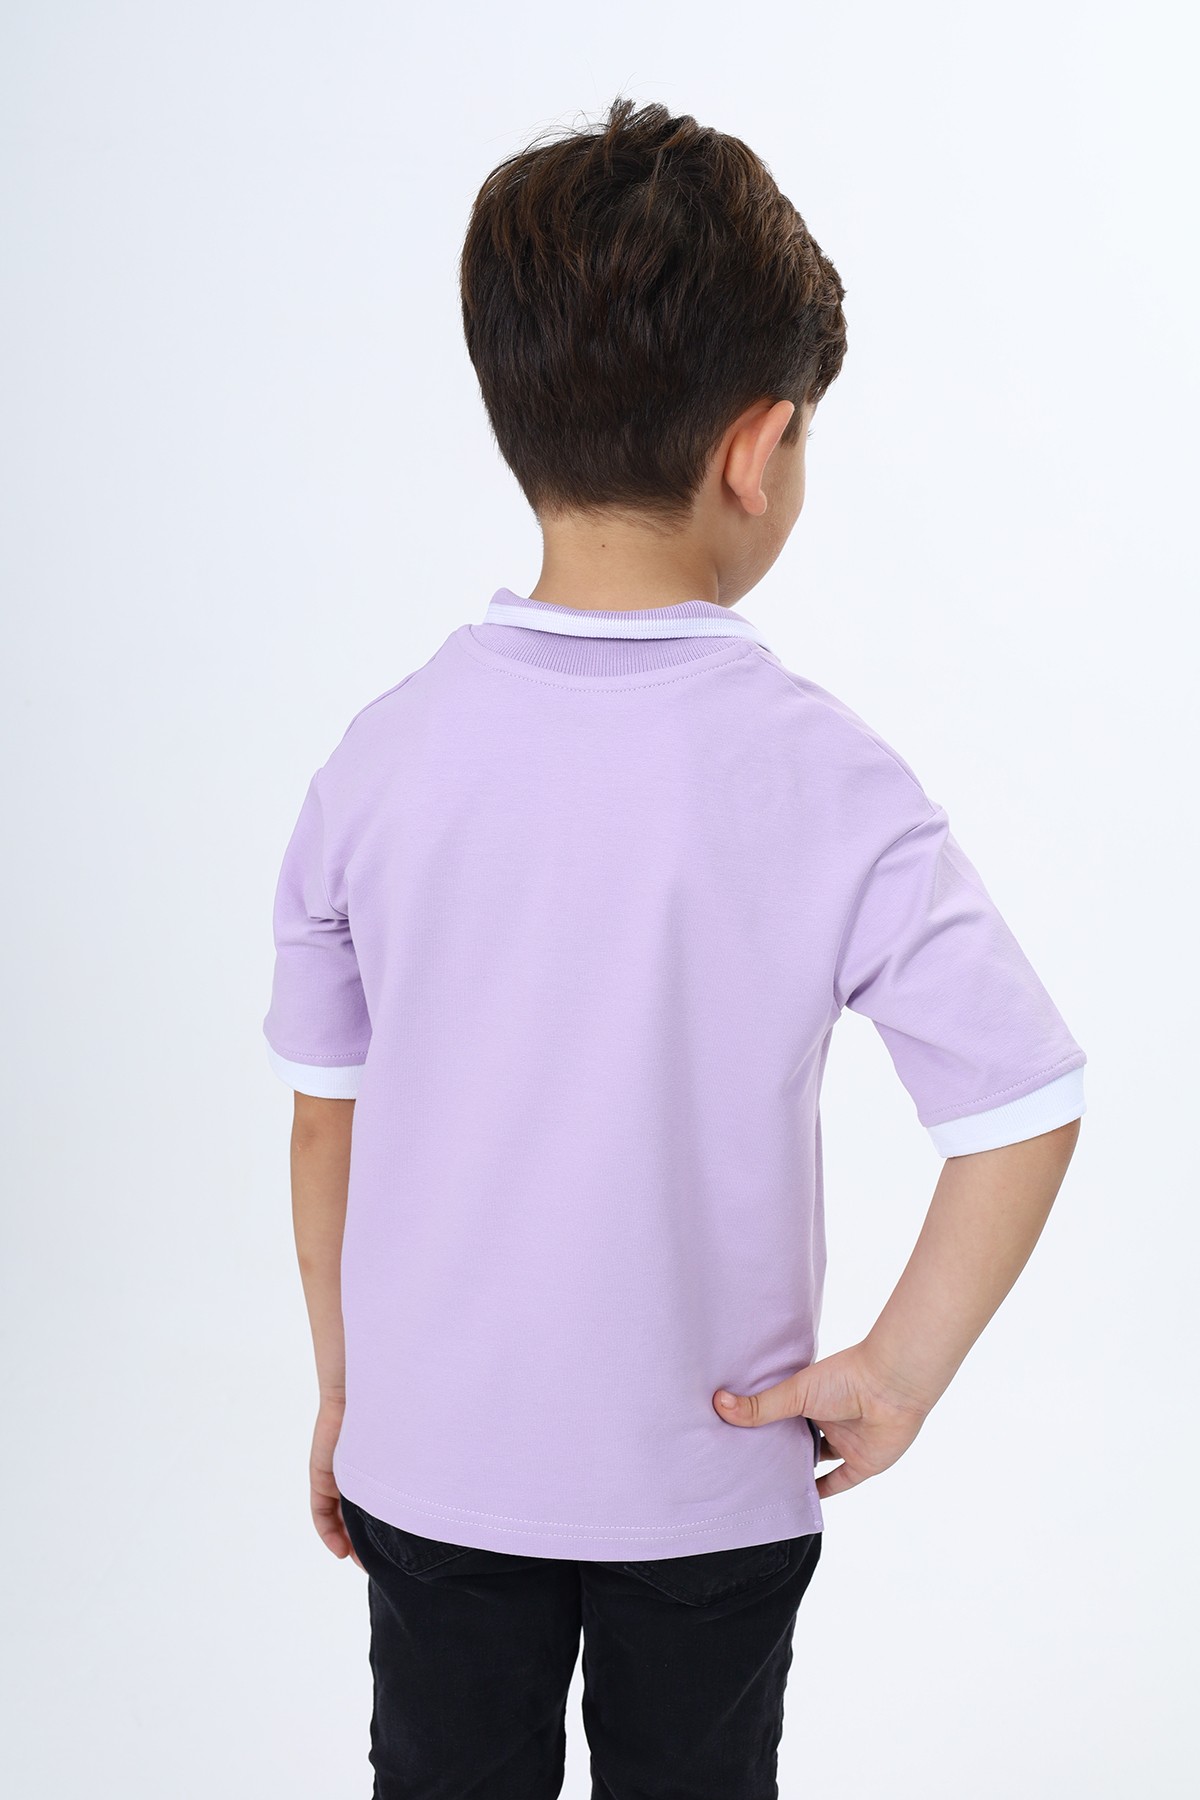 Toontoy Erkek Çocuk Baskılı Tişört